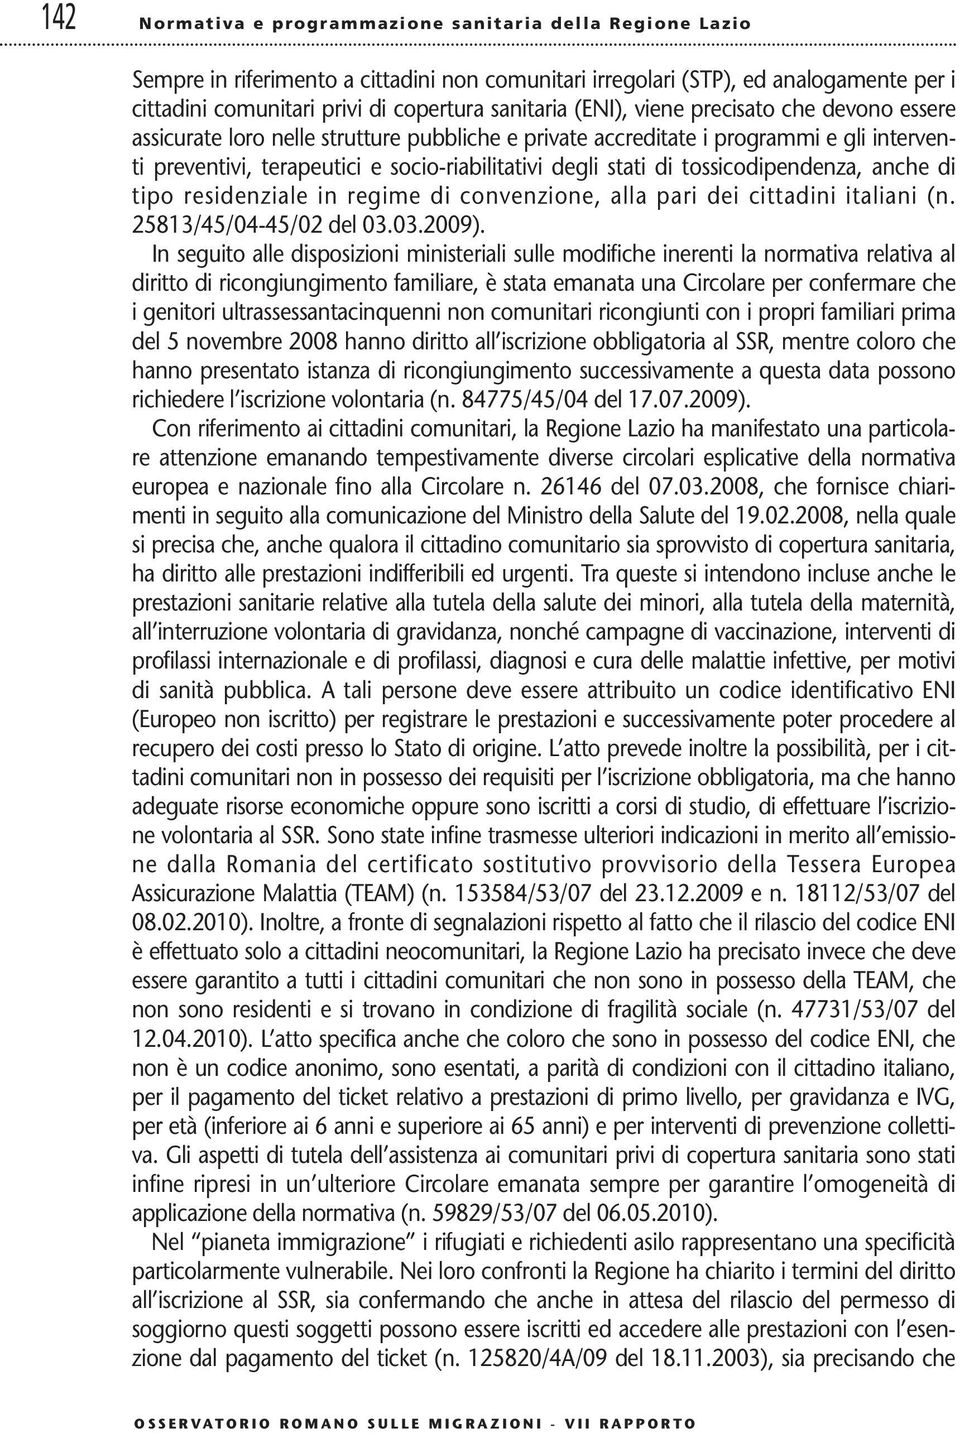 tossicodipendenza, anche di tipo residenziale in regime di convenzione, alla pari dei cittadini italiani (n. 25813/45/04-45/02 del 03.03.2009).